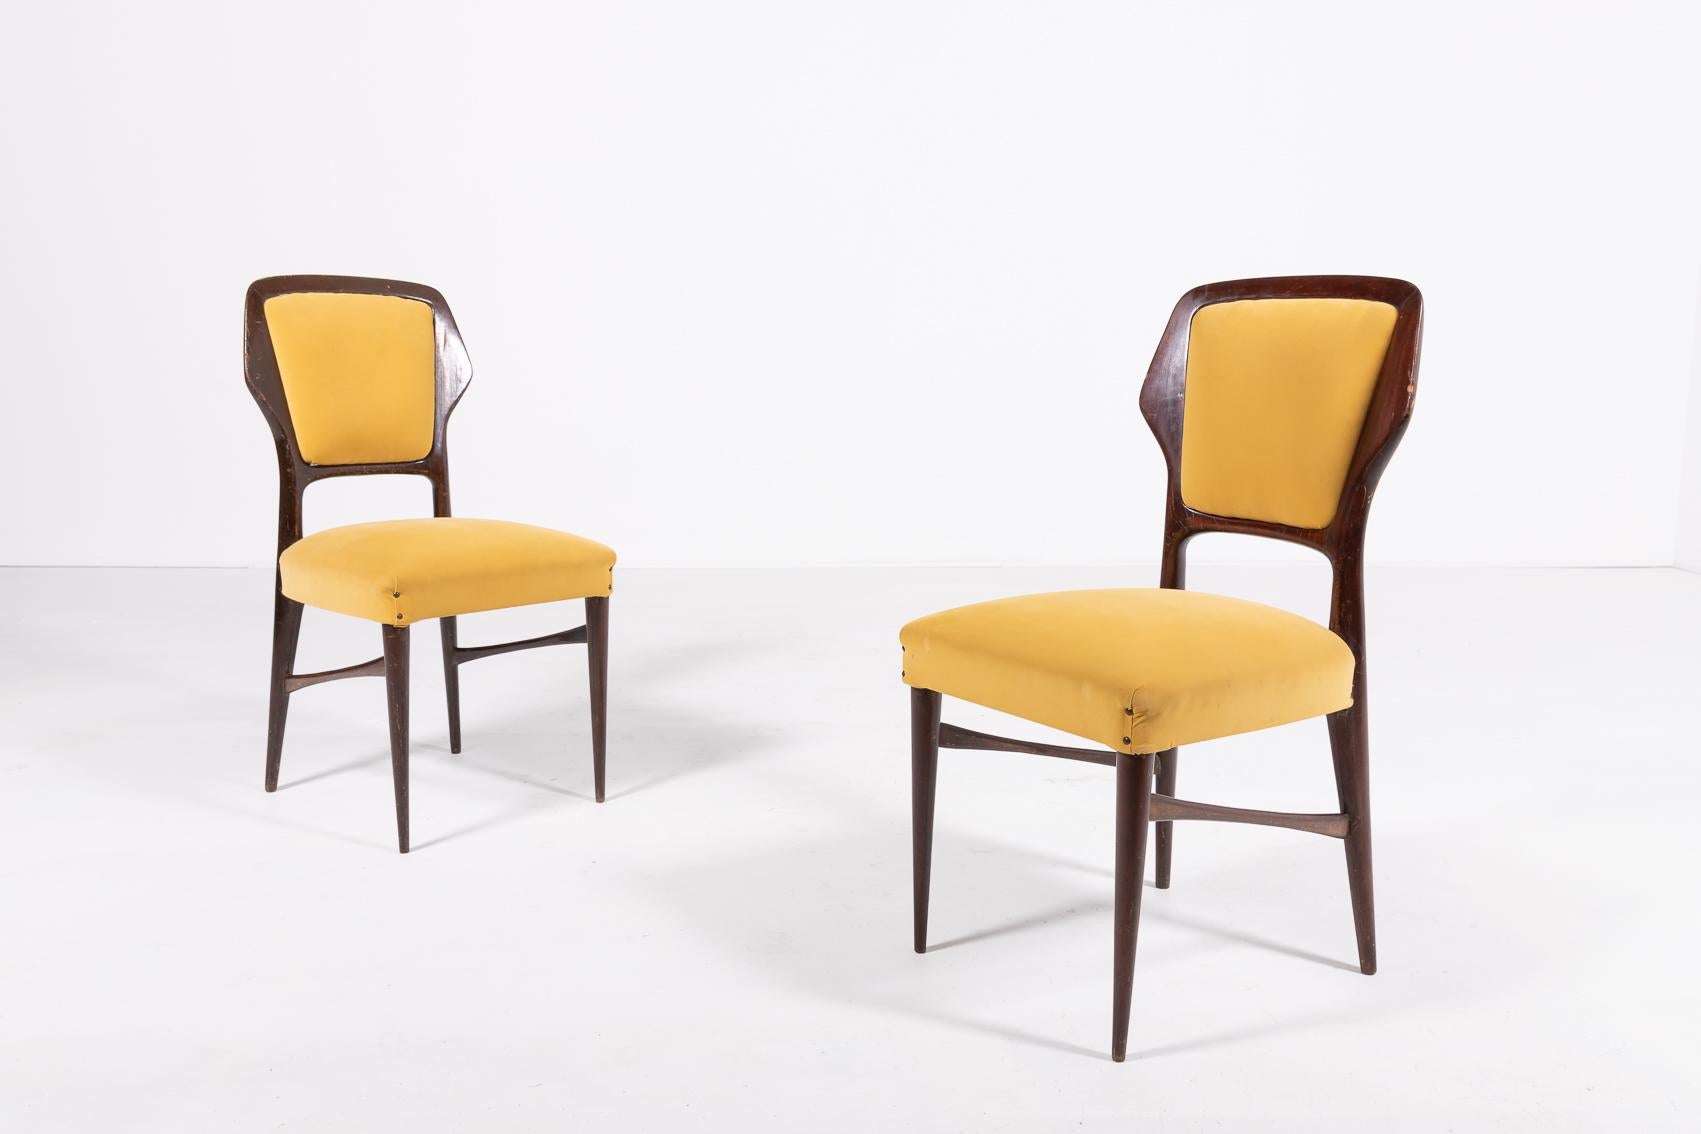 Ensemble de 6 chaises sculpturales italiennes modernes des années 1960 de Vittorio Dassi. Les chaises ont un cadre en noyer verni et sont recouvertes de velours d'origine.

Condit
Bon, usure due à l'âge. Quelques rayures sur le cadre en bois et des